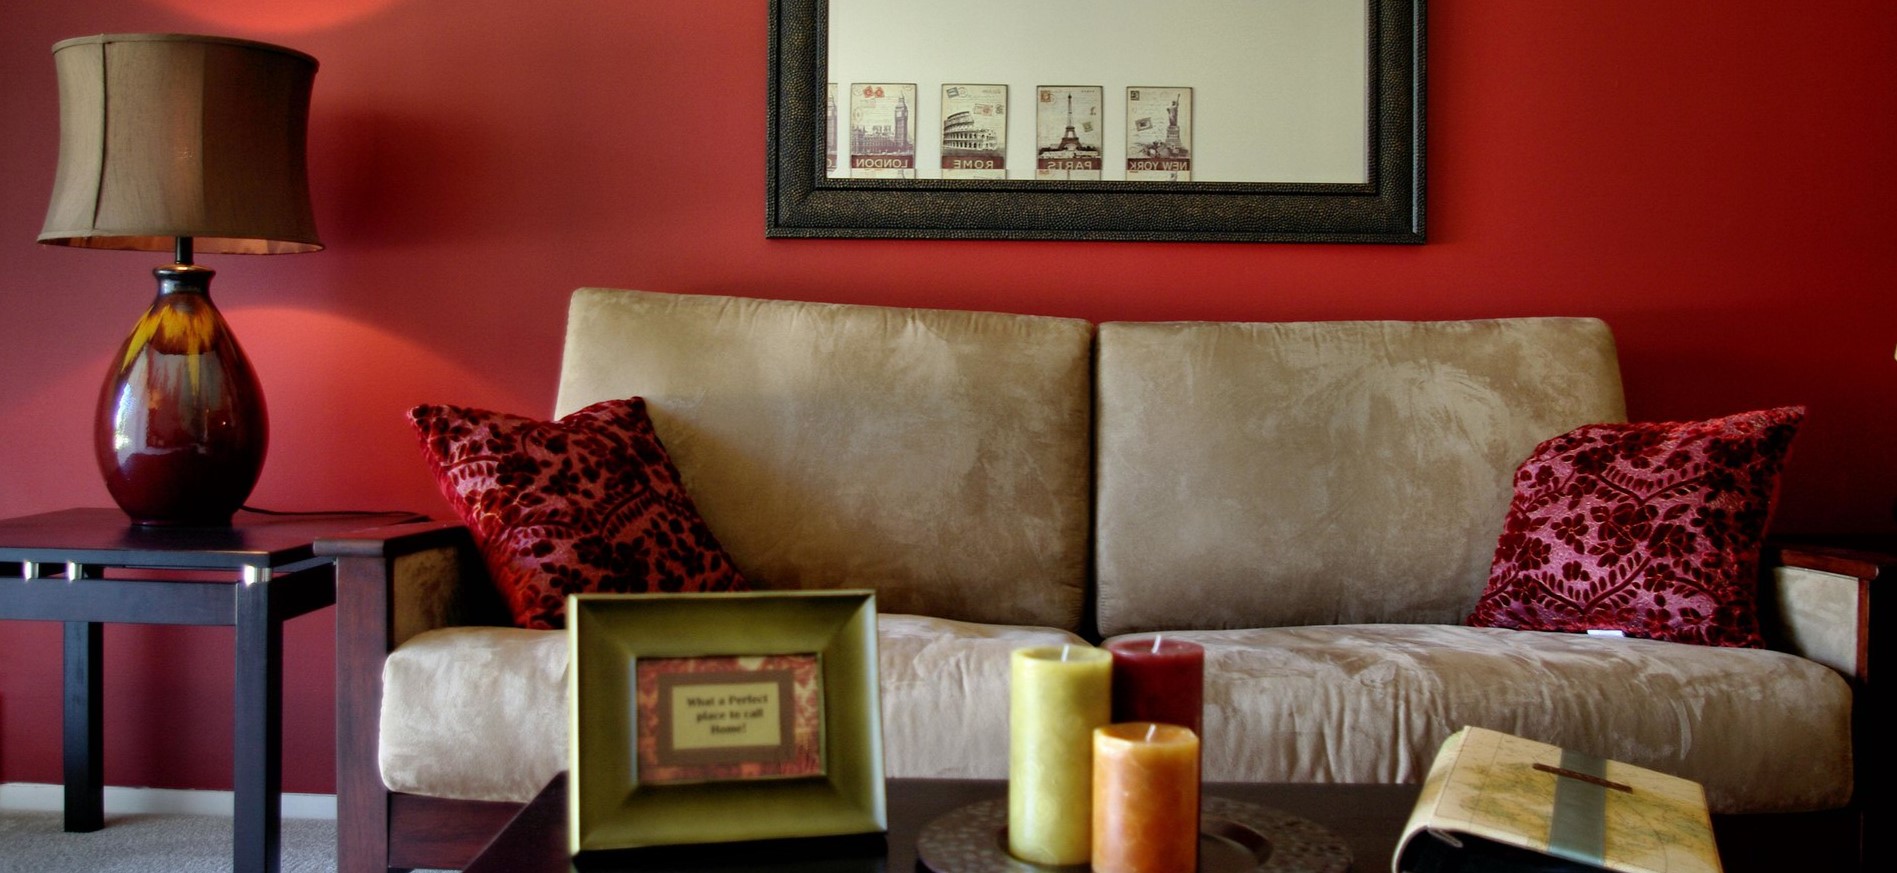 На бежевом диване можно разместить красные подушки под цвет стен